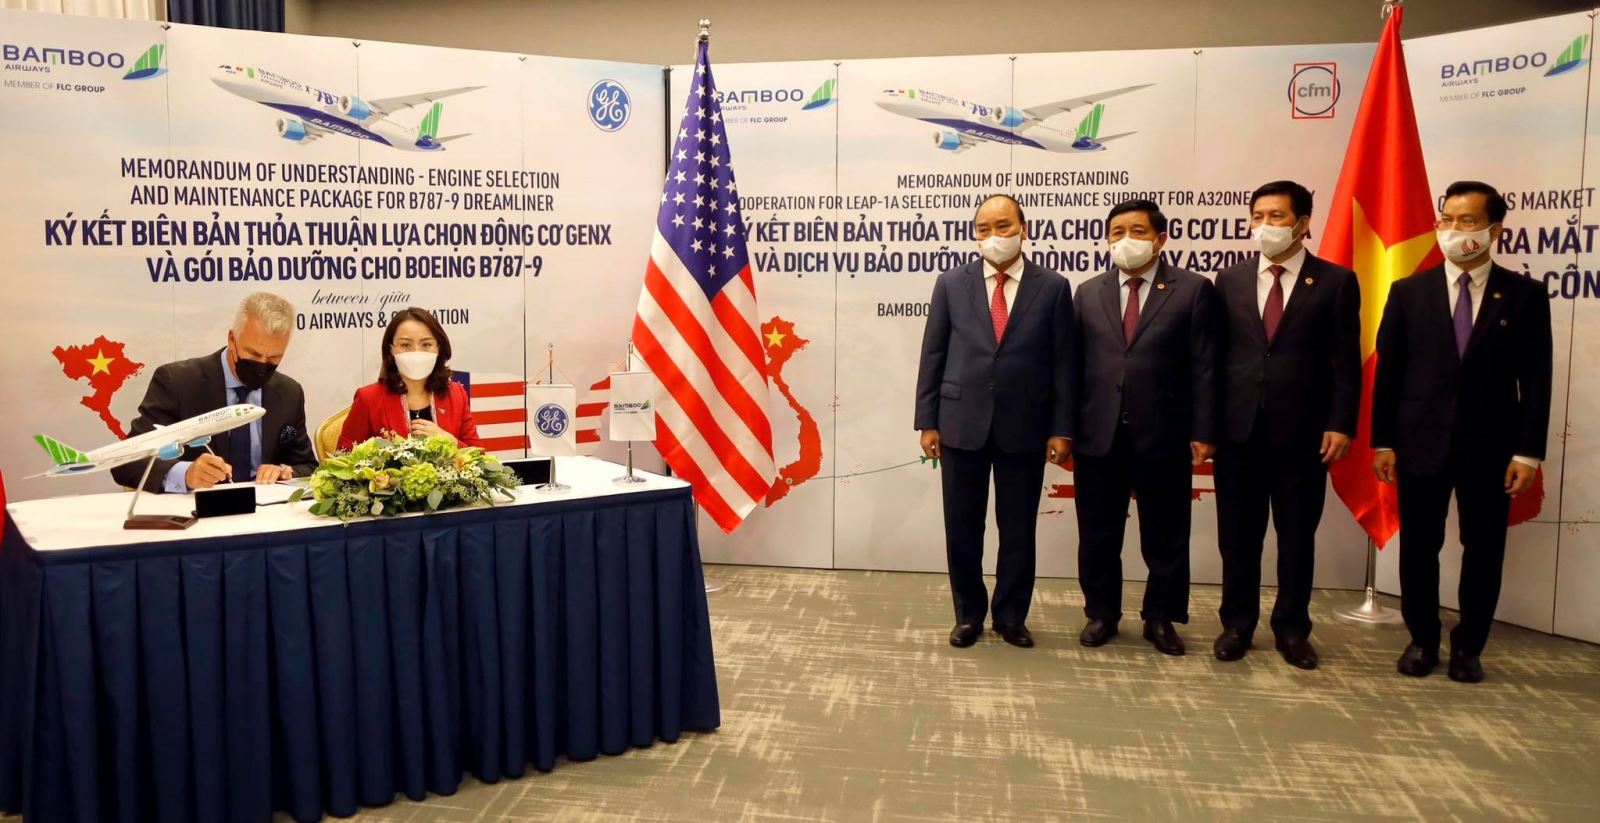 Chủ tịch nước chứng kiến lễ ký kết hợp đồng giữa các doanh nghiệp Việt Nam và Hoa Kỳ - Ảnh 2.